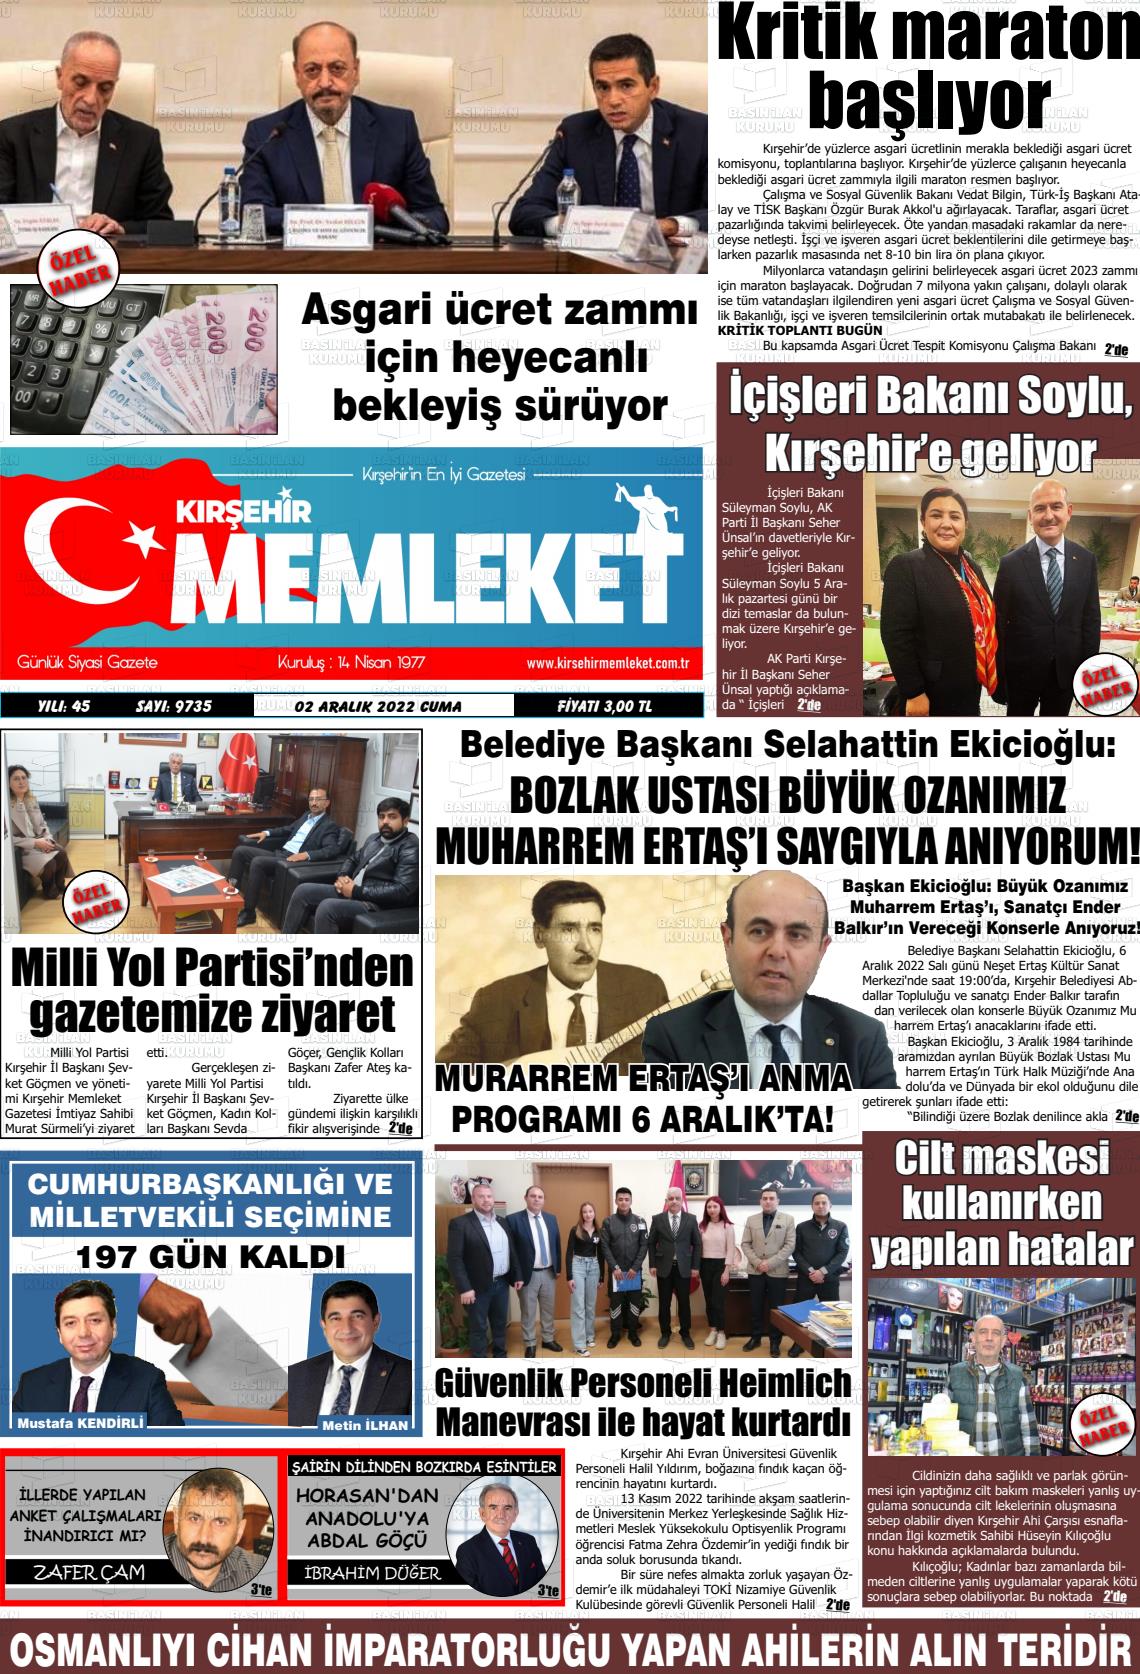 02 Aralık 2022 Kırşehir Memleket Gazete Manşeti